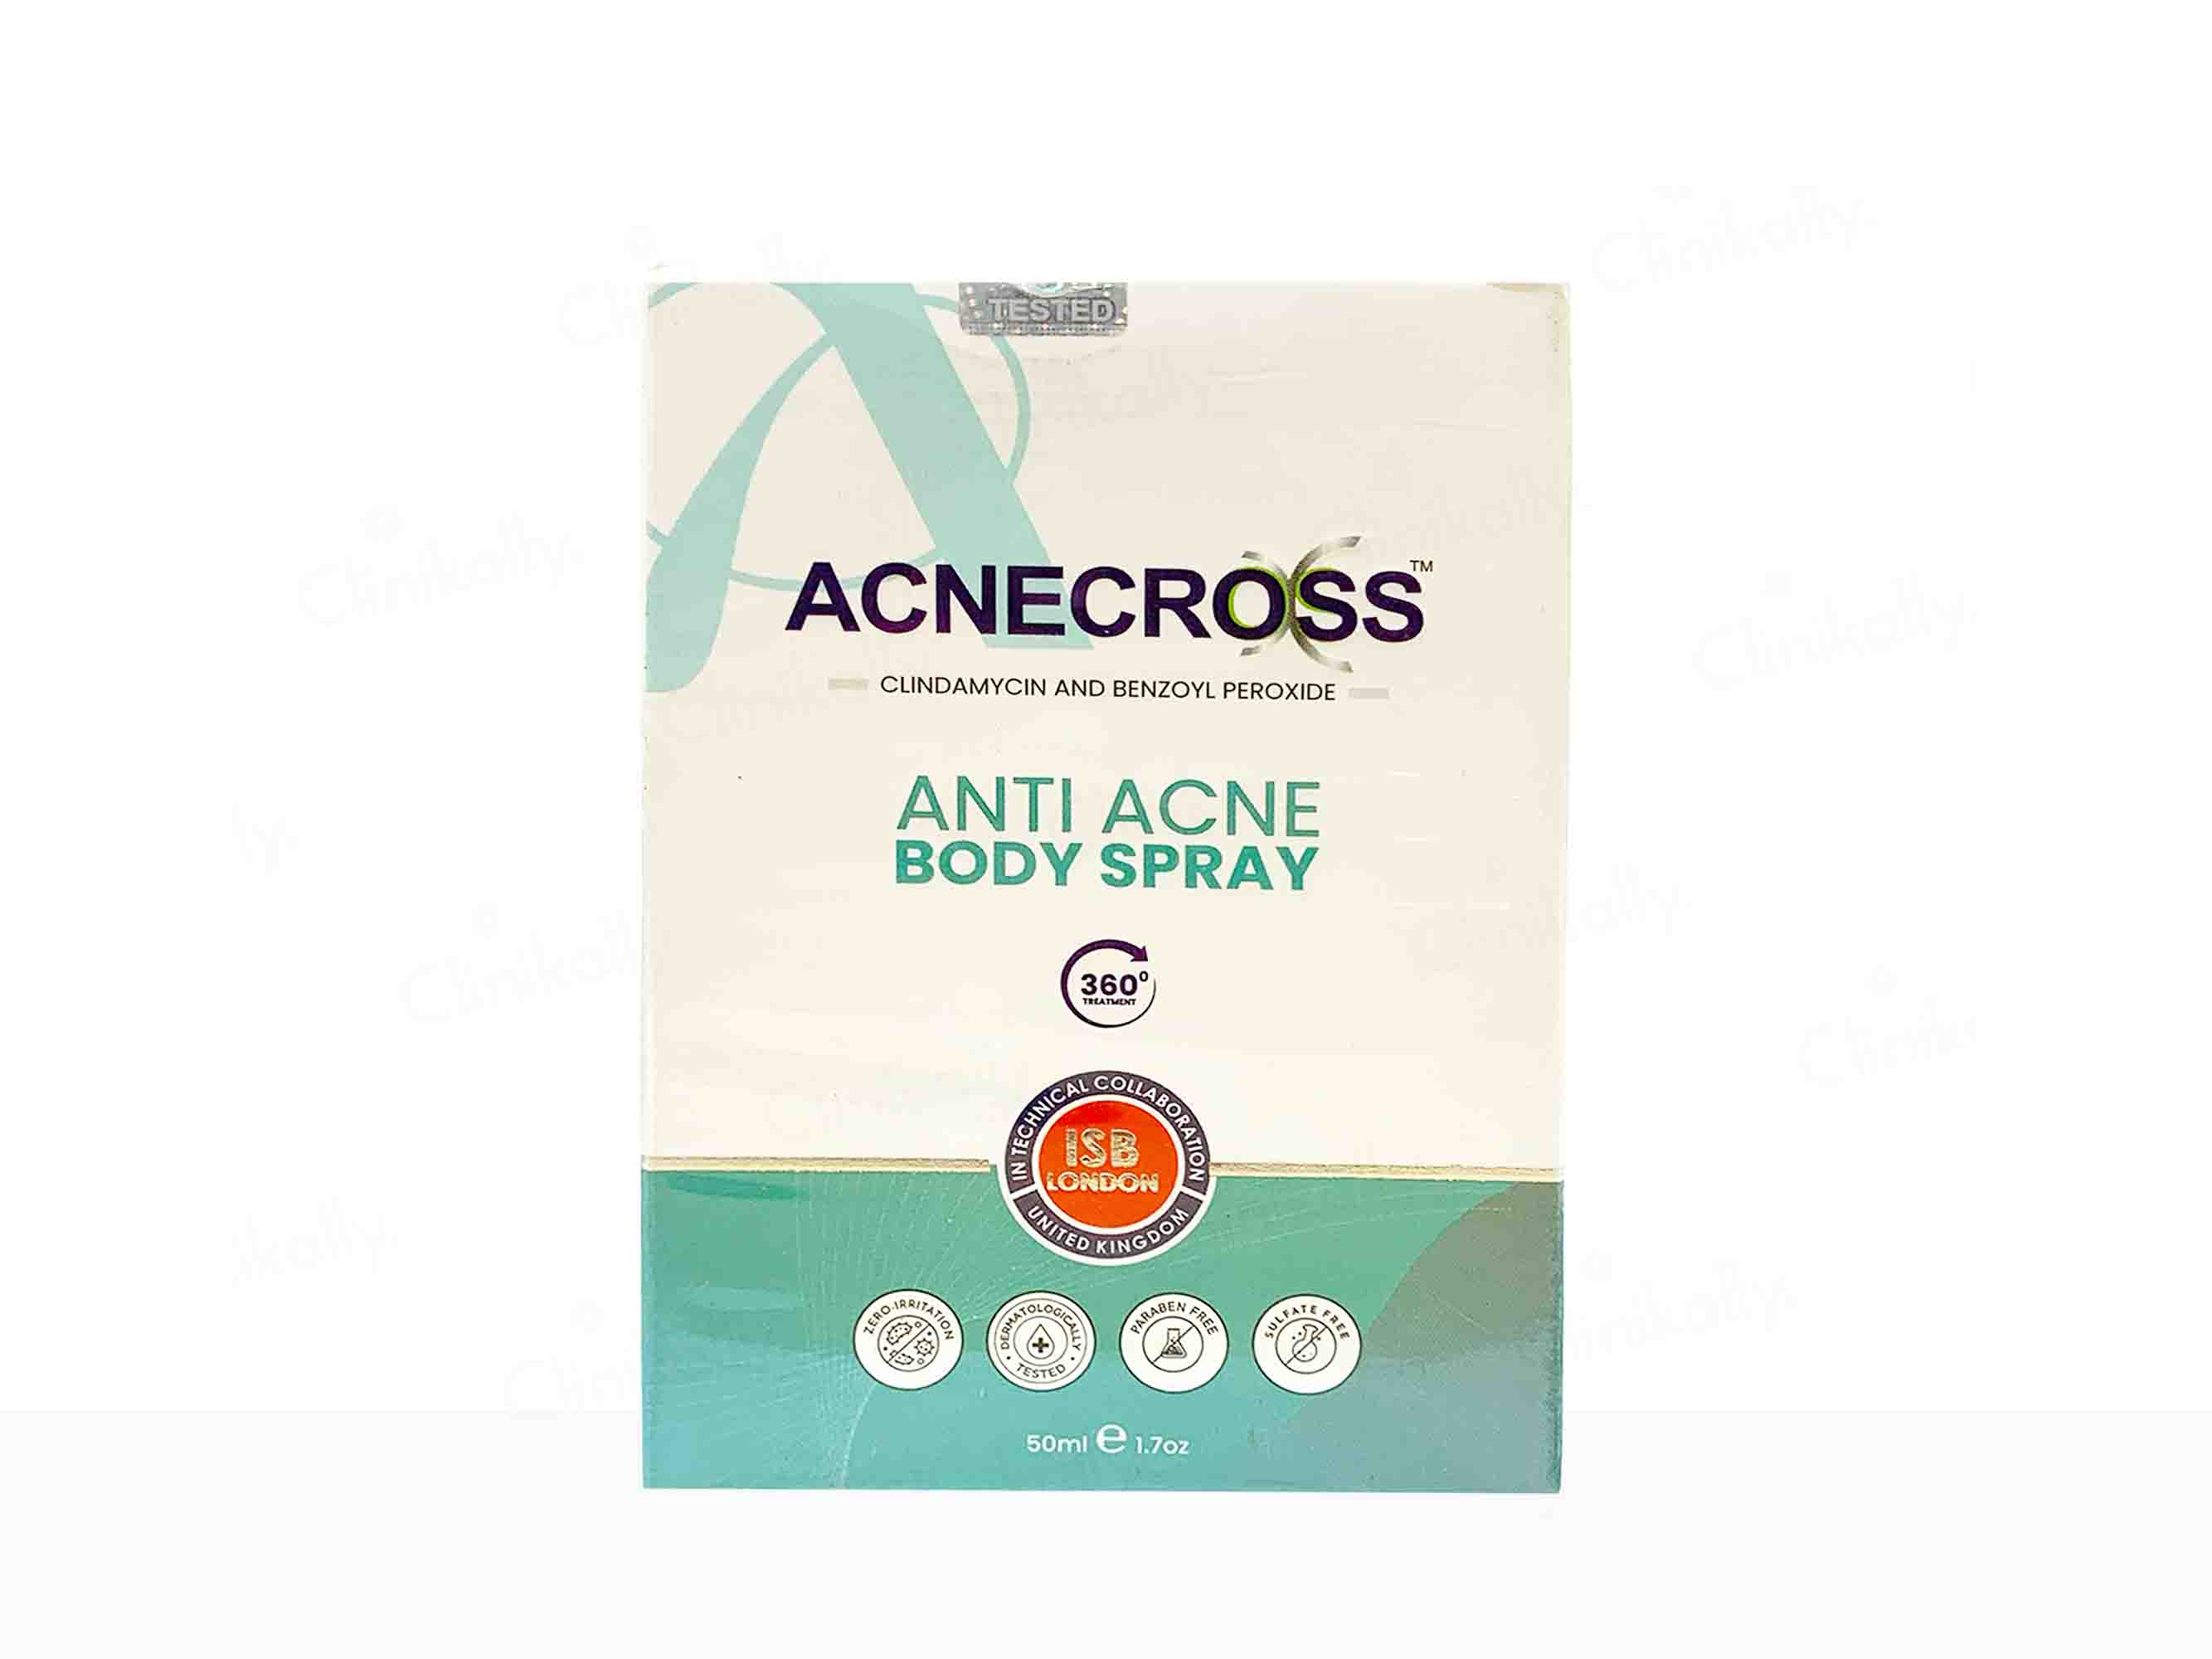 Acnecross Anti Acne Body Spray